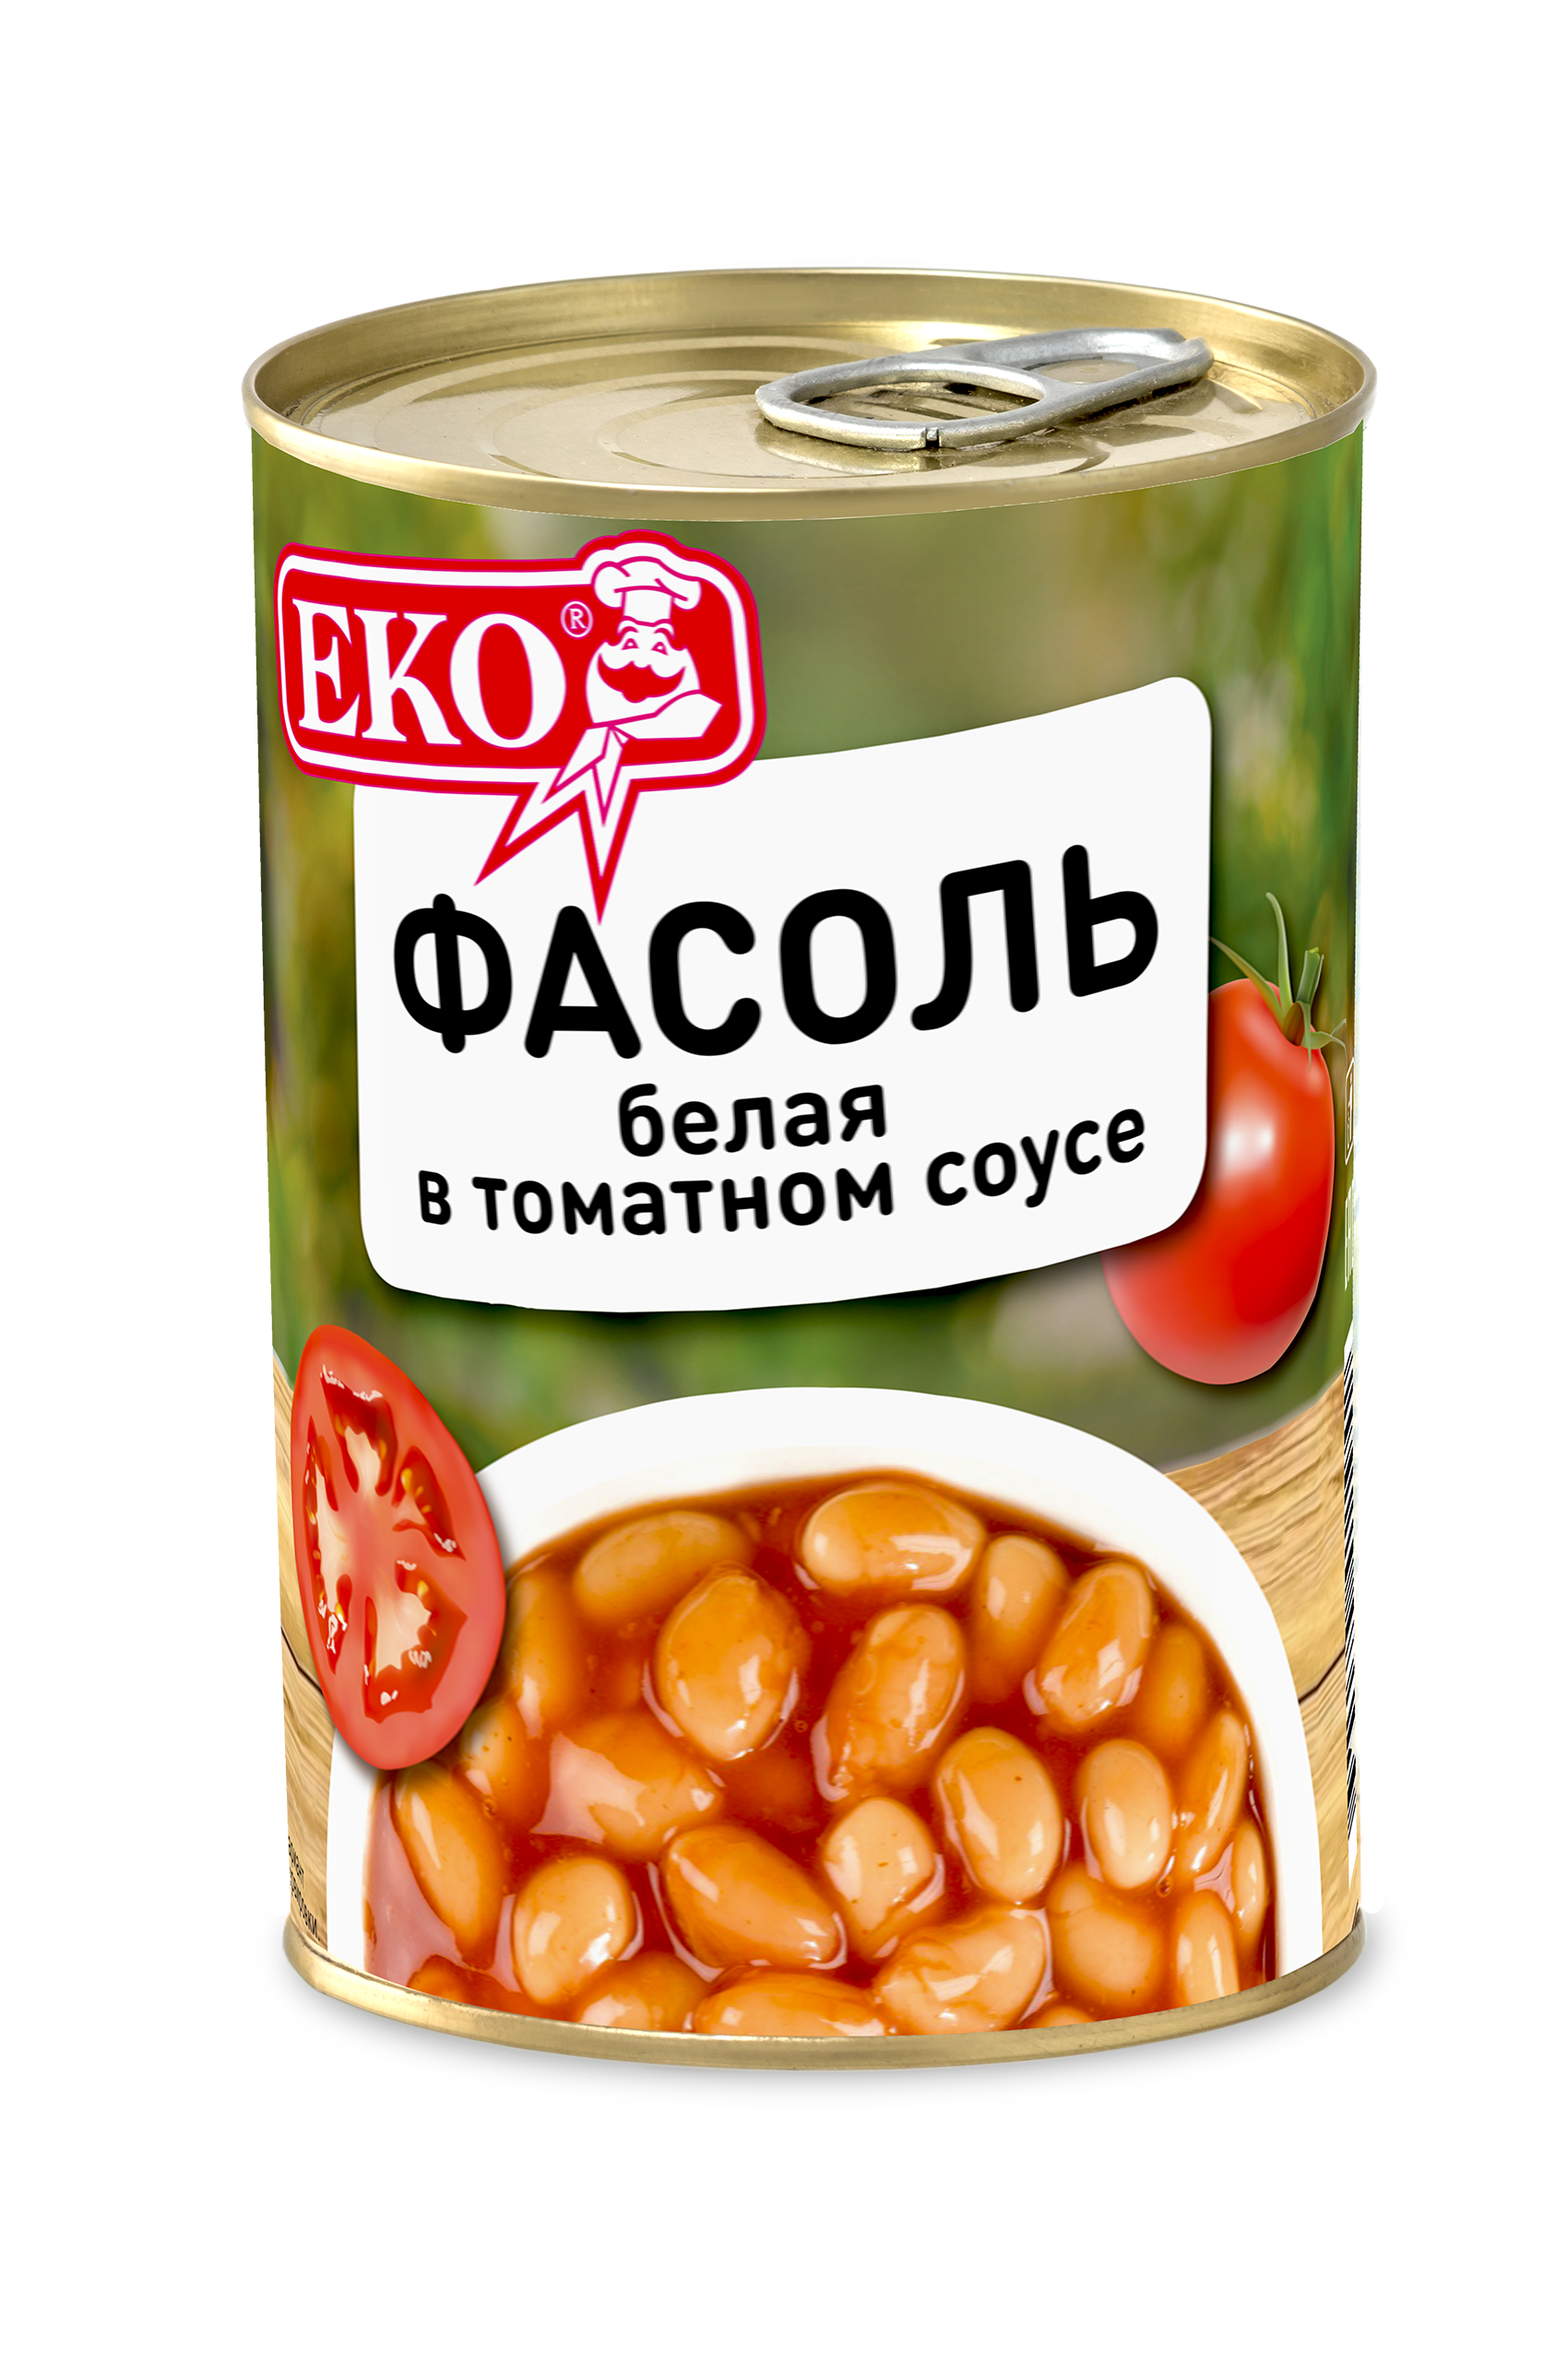 White beans in tomato sauce